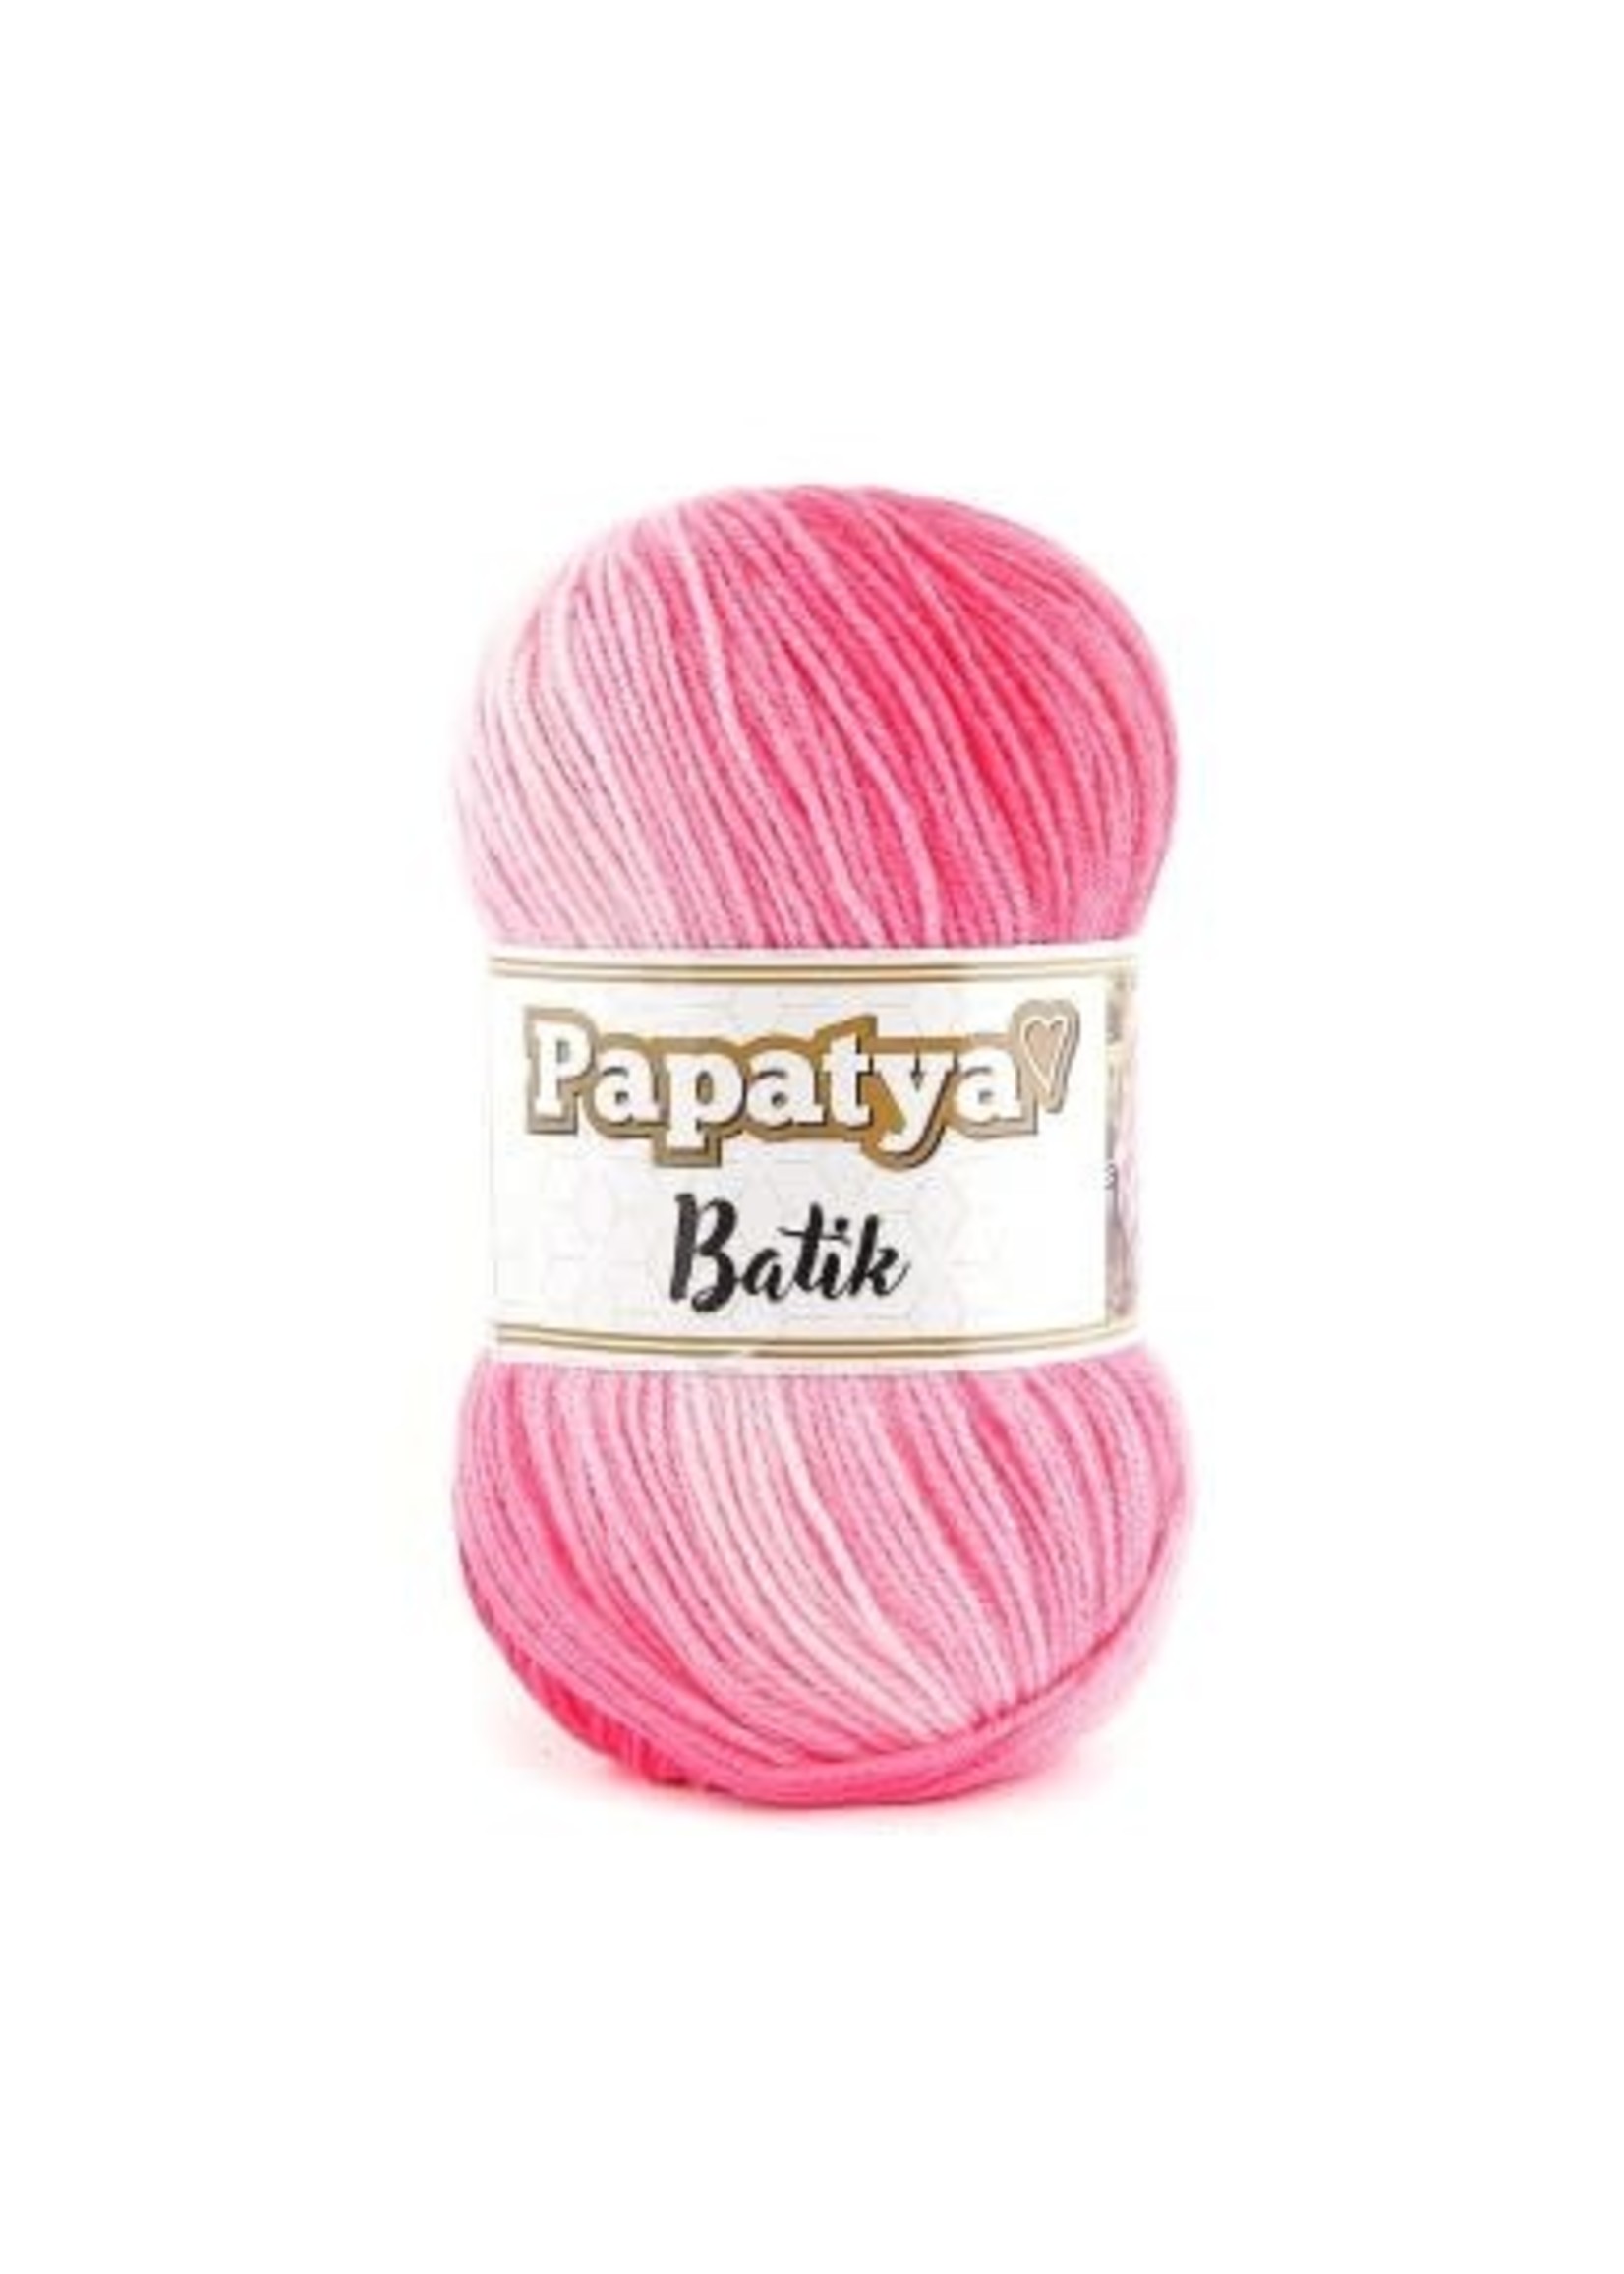 Papatya Papatya Batik - 05 Liefde